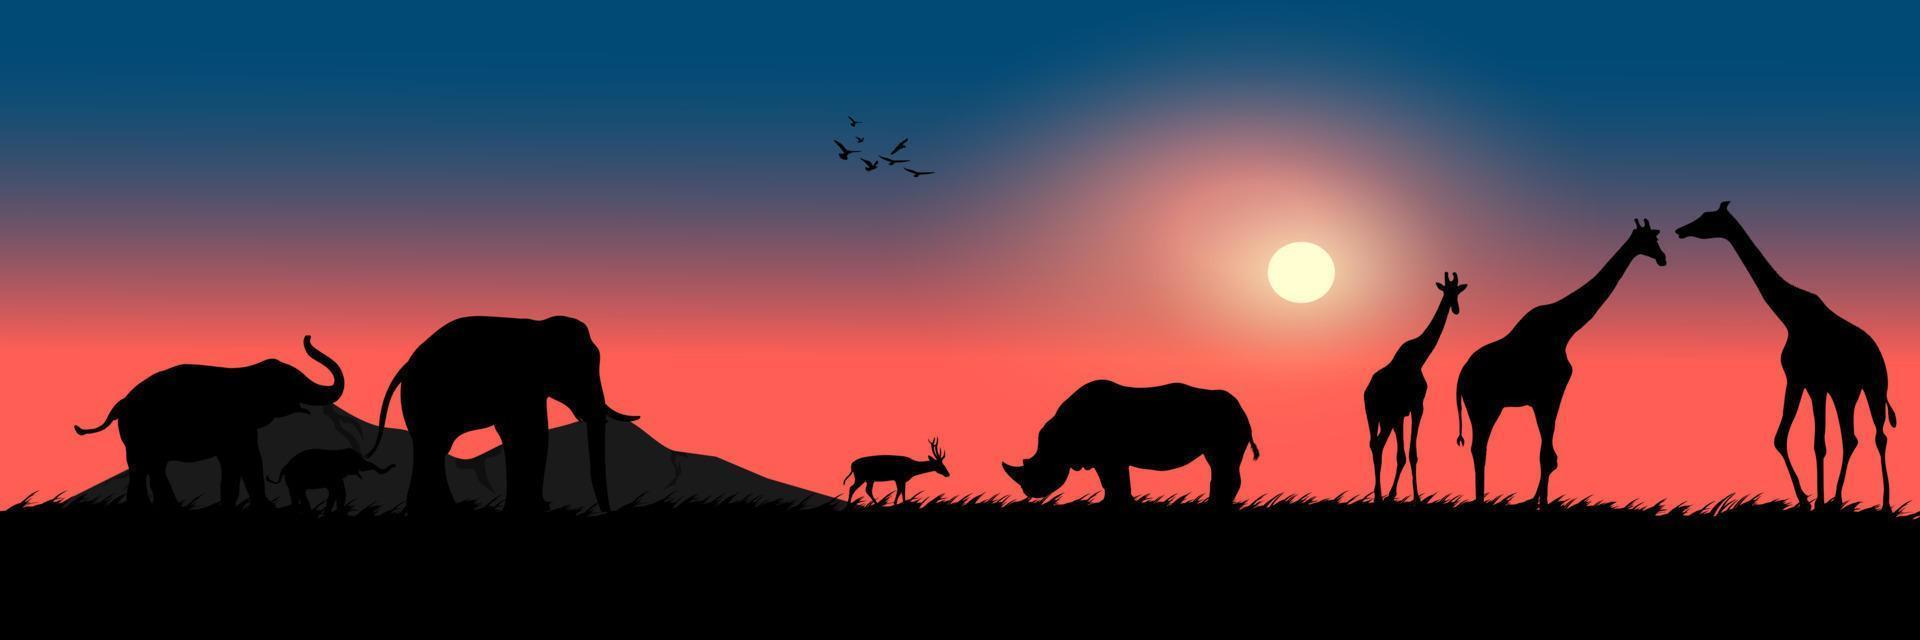 graphique dessin paysage vue animaux de plein air éléphant cerf rhinocéros girafe avec coucher de soleil sur le sol pour papier peint fond illustration vectorielle vecteur